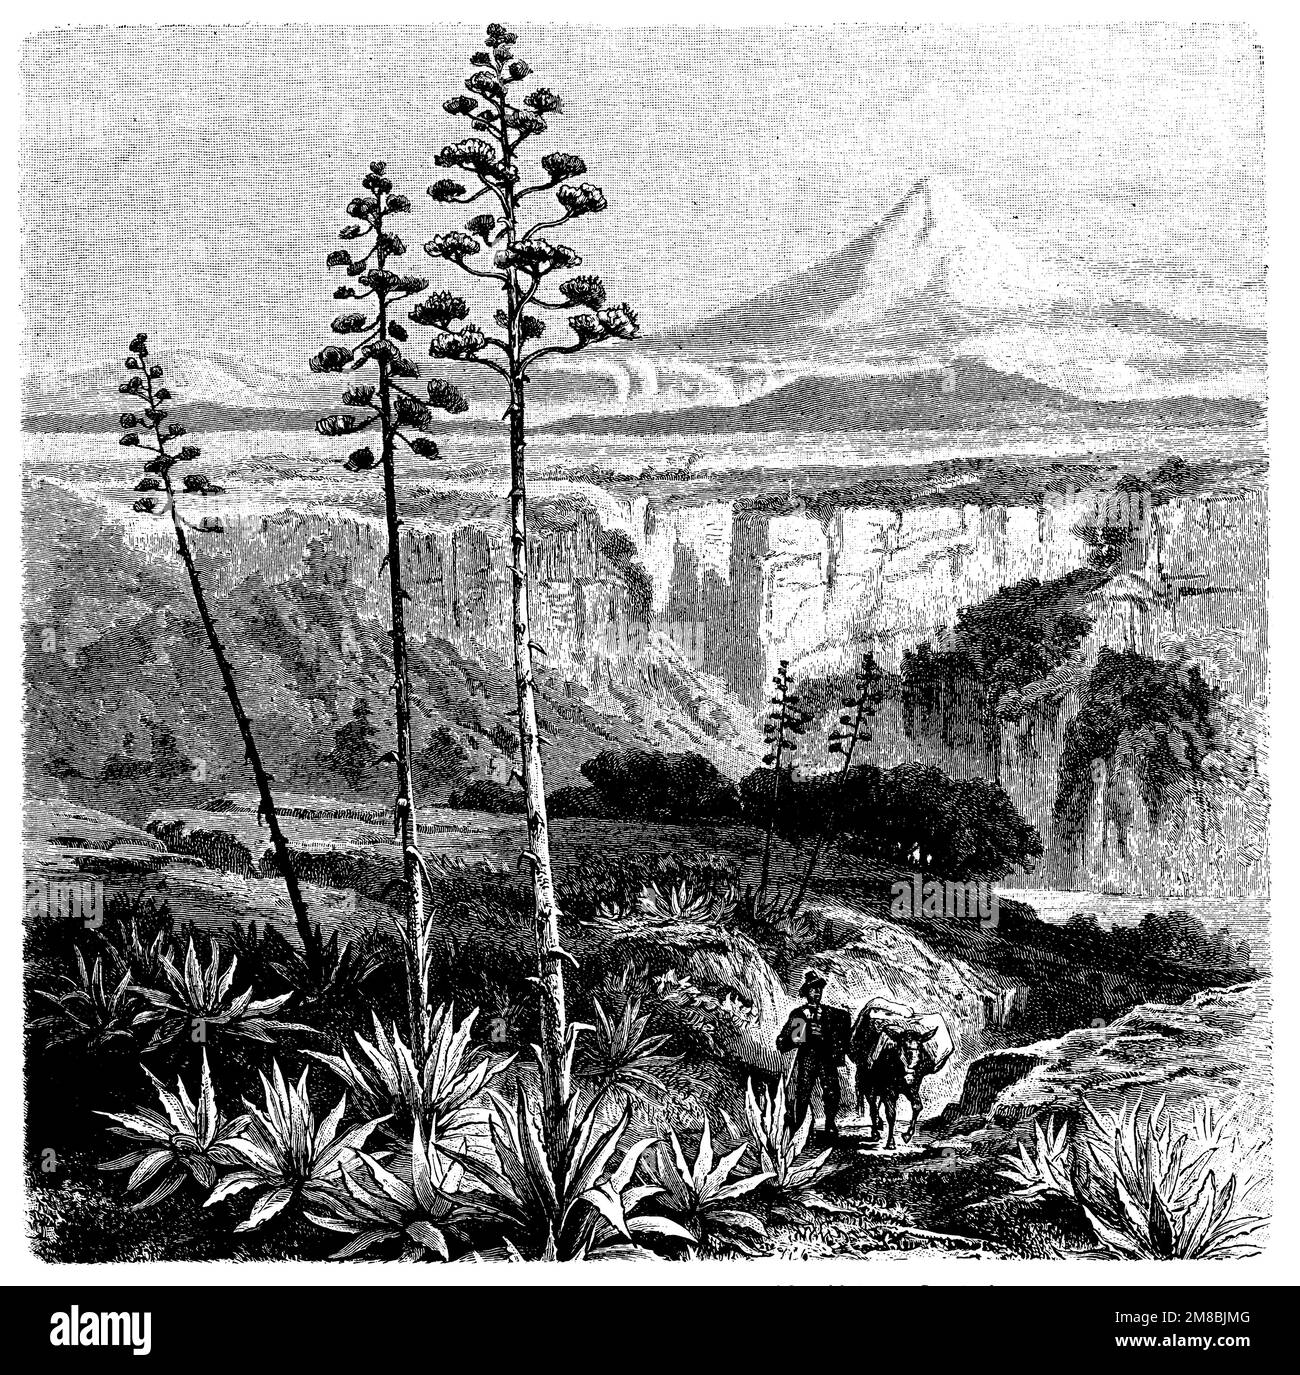 Plante du siècle américain dans le plateau mexicain, Agave americana, (livre botanique, 1899), Agave in der mexikanischen Hochebène, Agave amicain dans les hauts plateaux mexicains Banque D'Images